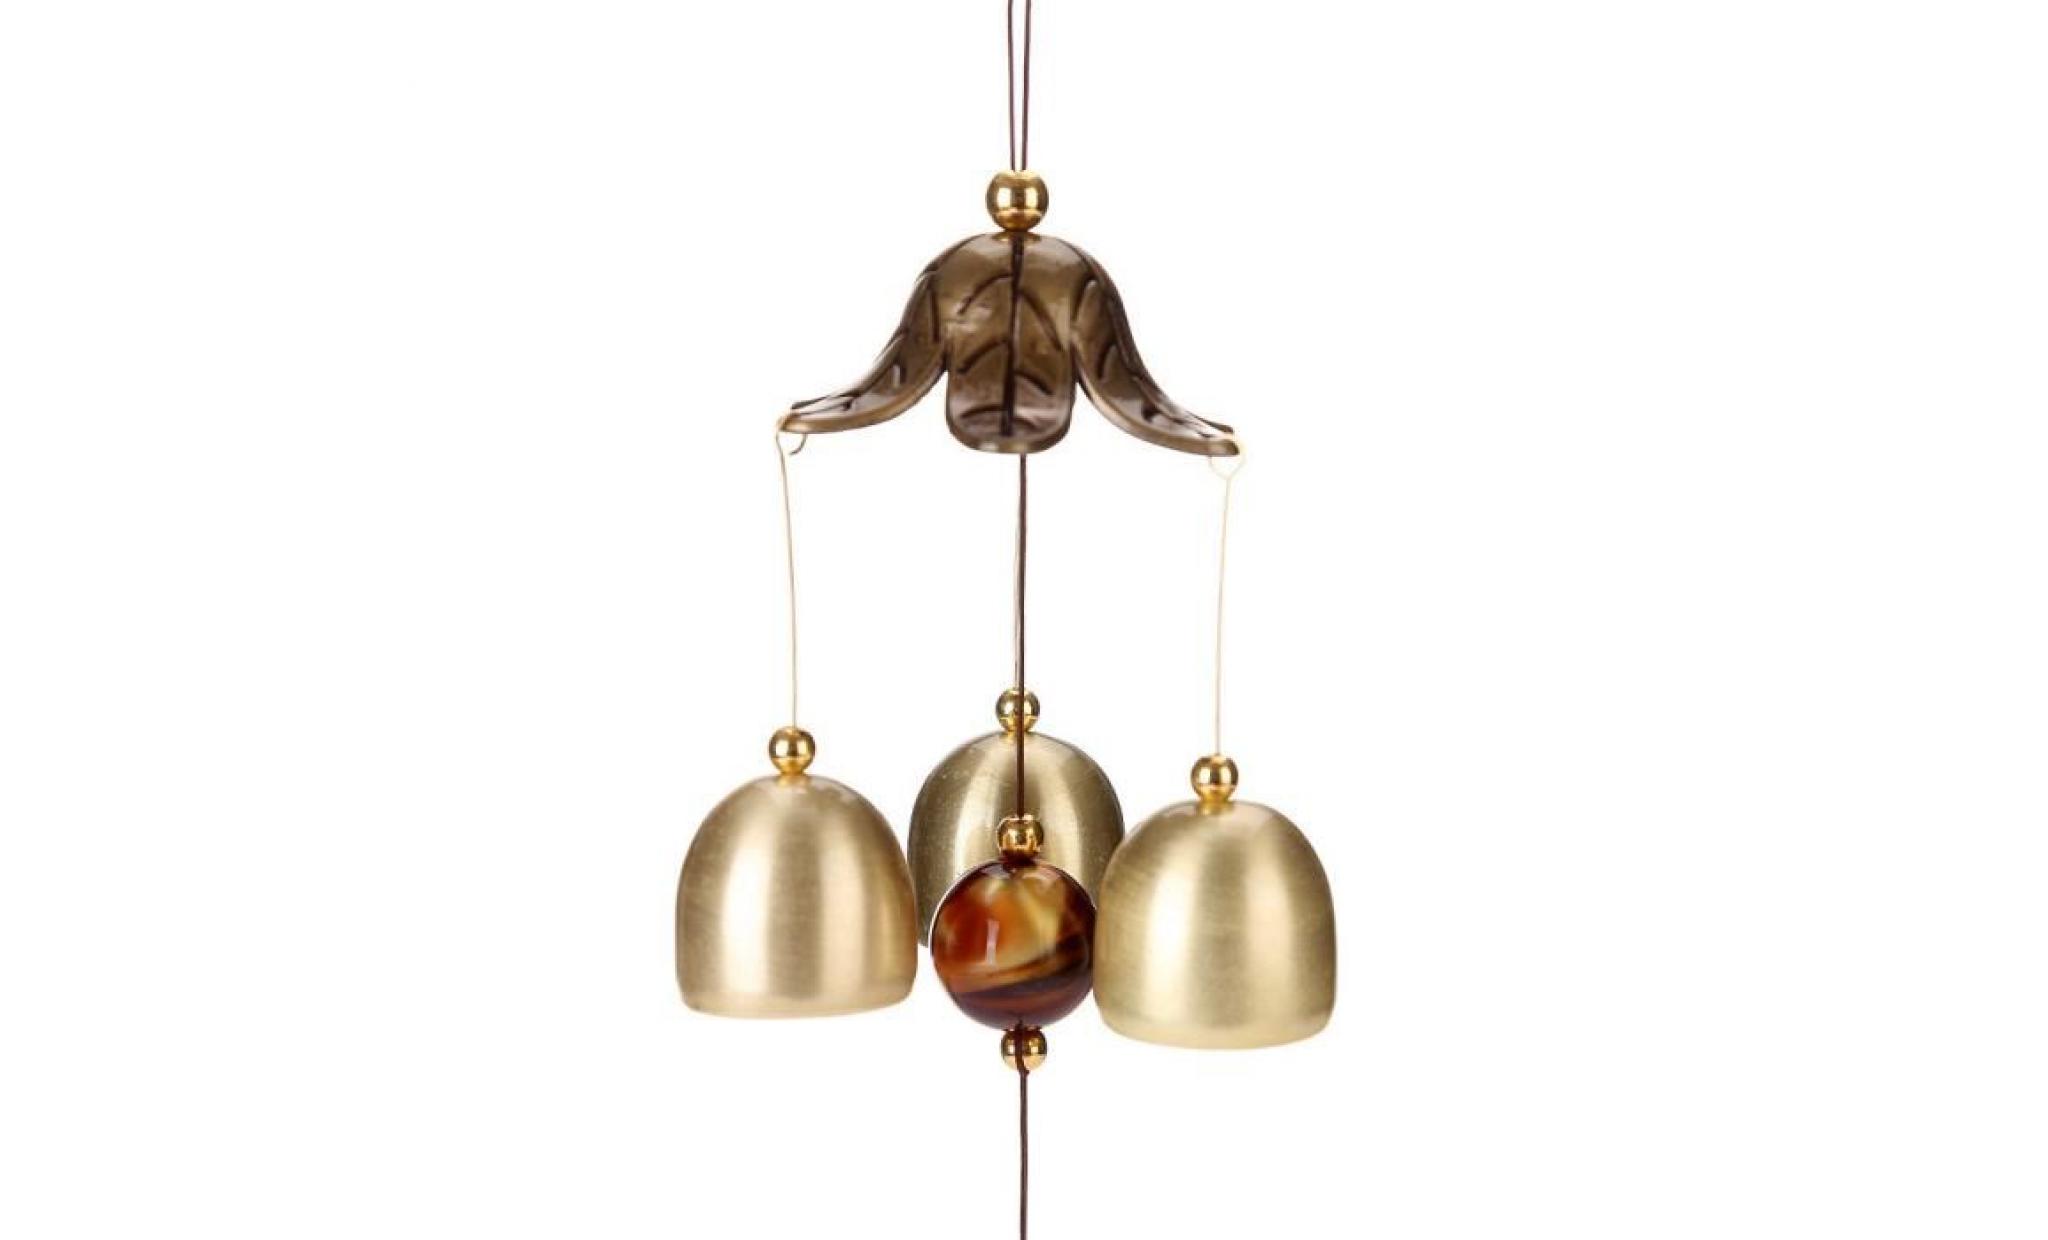 incroyable chime grace collection grand son bronze couleur bells carillons éoliens _jjqt * 1757 pas cher